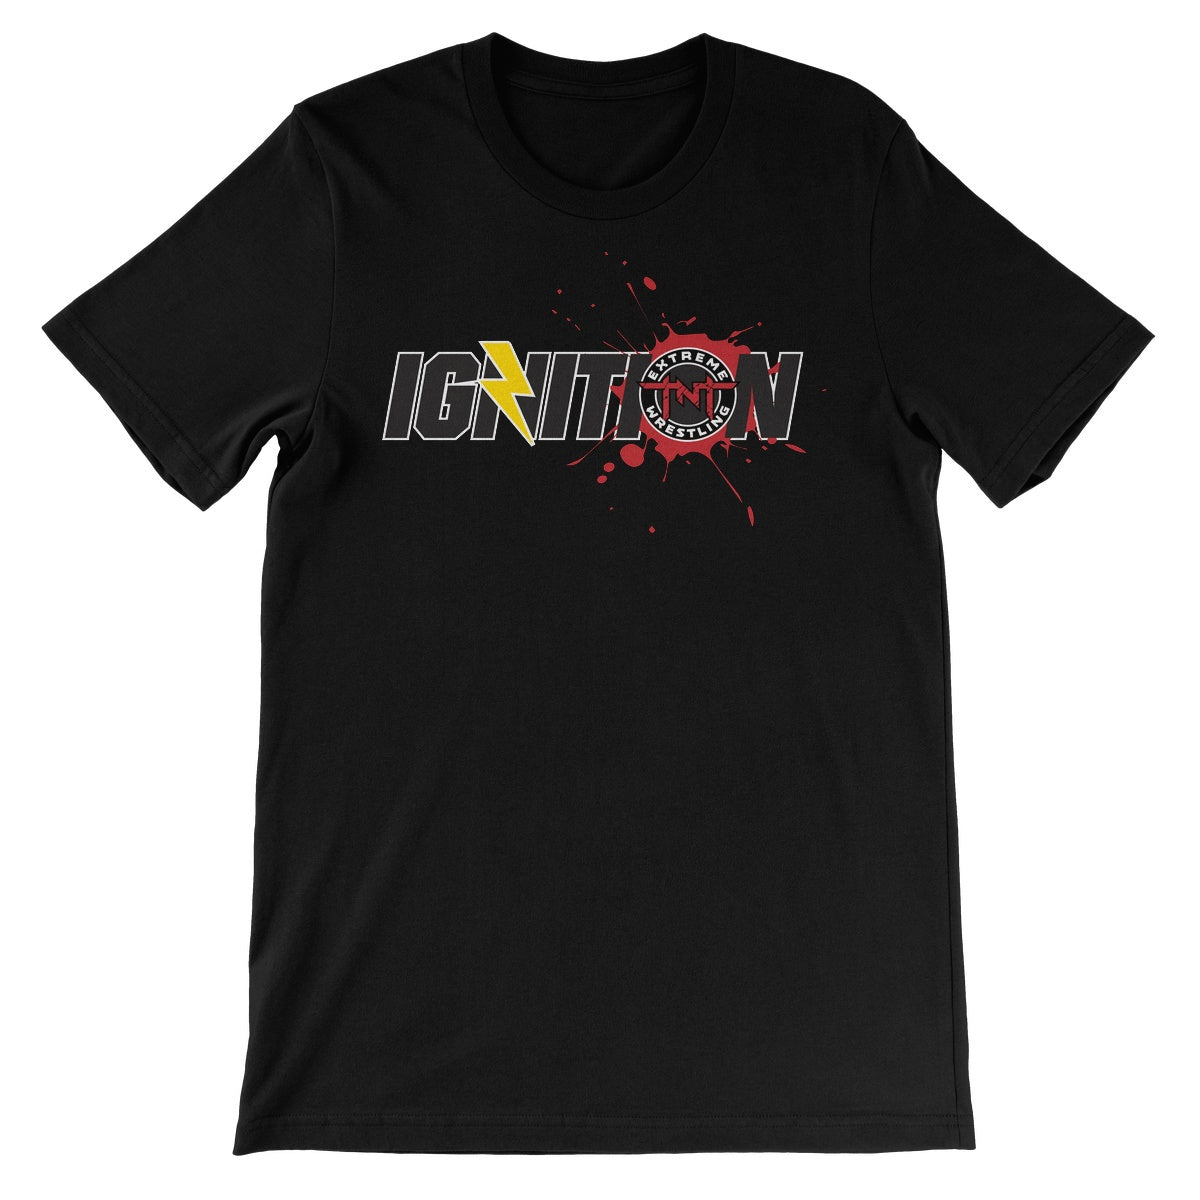 TNT Extreme Wrestling IGNITION Unisex Short Sleeve T-Shirt